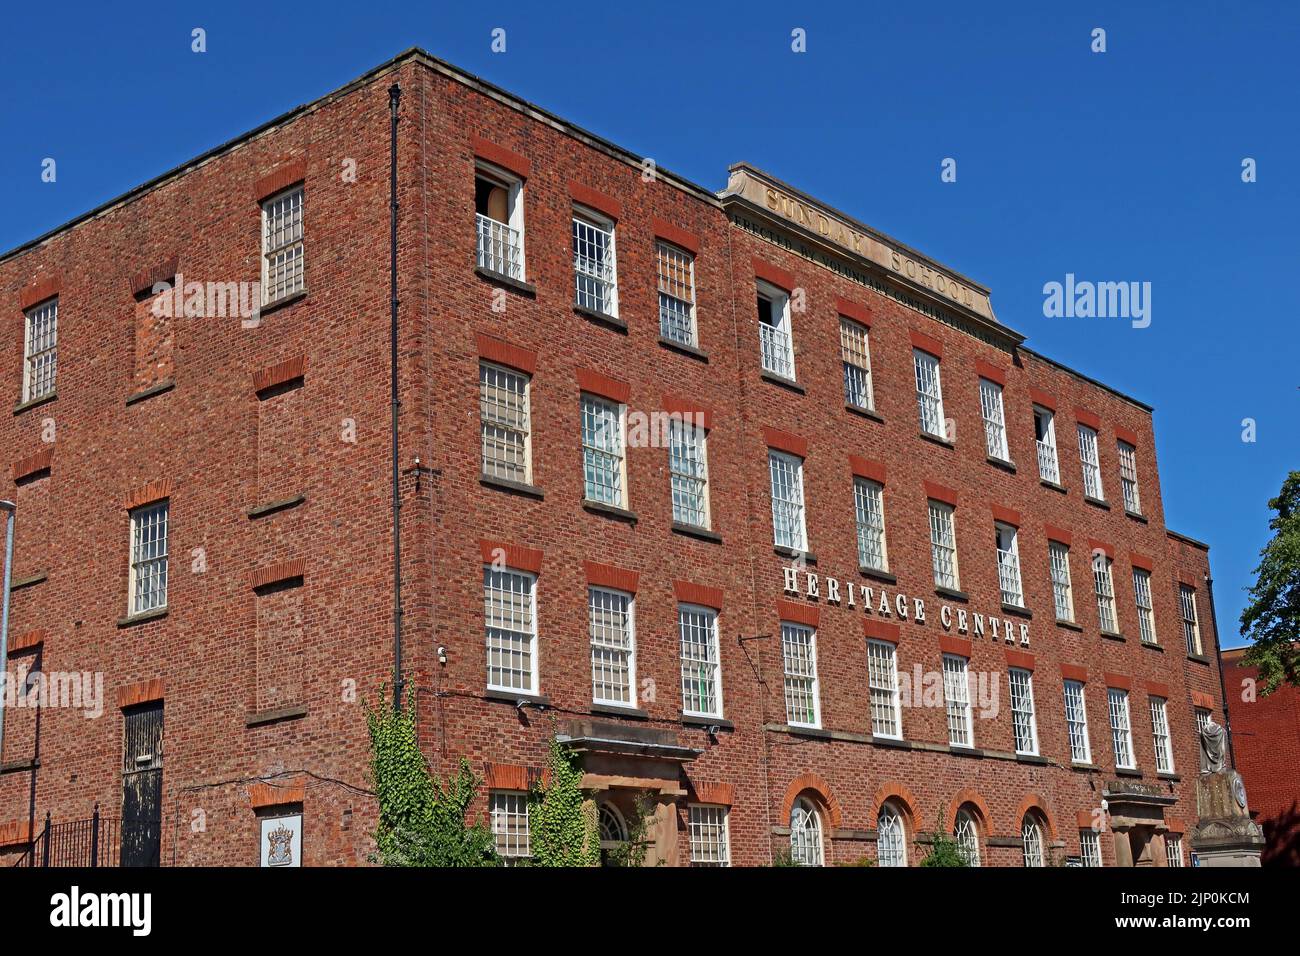 Macclesfield Sunday School, maintenant utilisé comme centre du patrimoine dédié à l'industrie de la soie, Roe St, Macclesfield , Cheshire, Angleterre, ROYAUME-UNI, SK11 6UT Banque D'Images